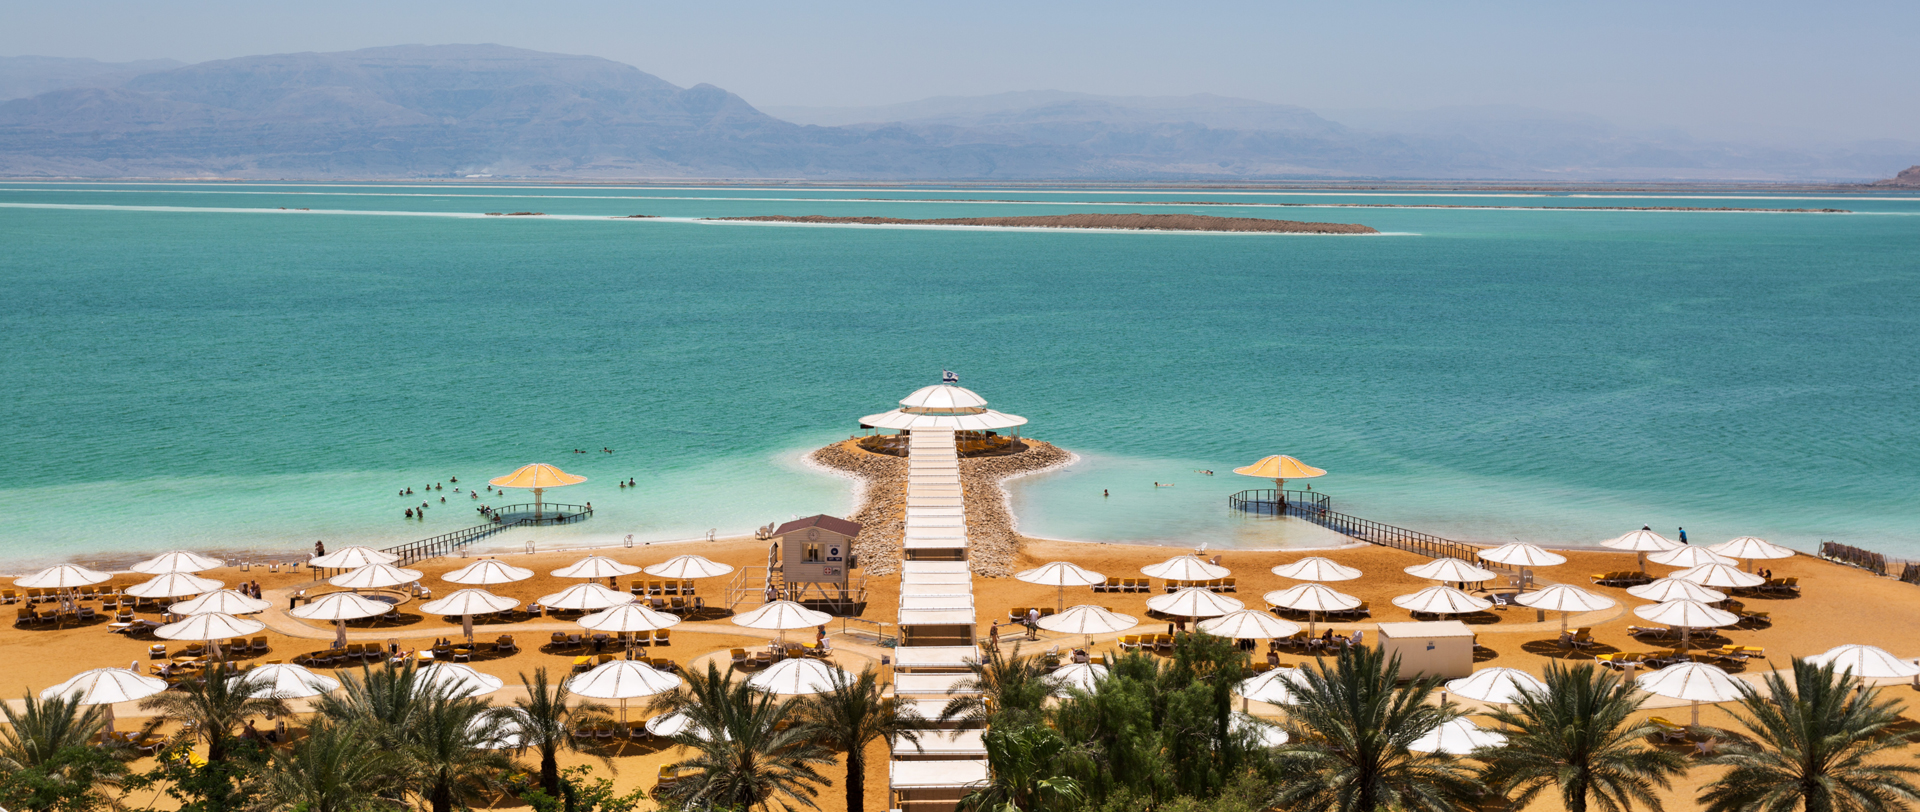 Lot Hotel - The Dead Sea